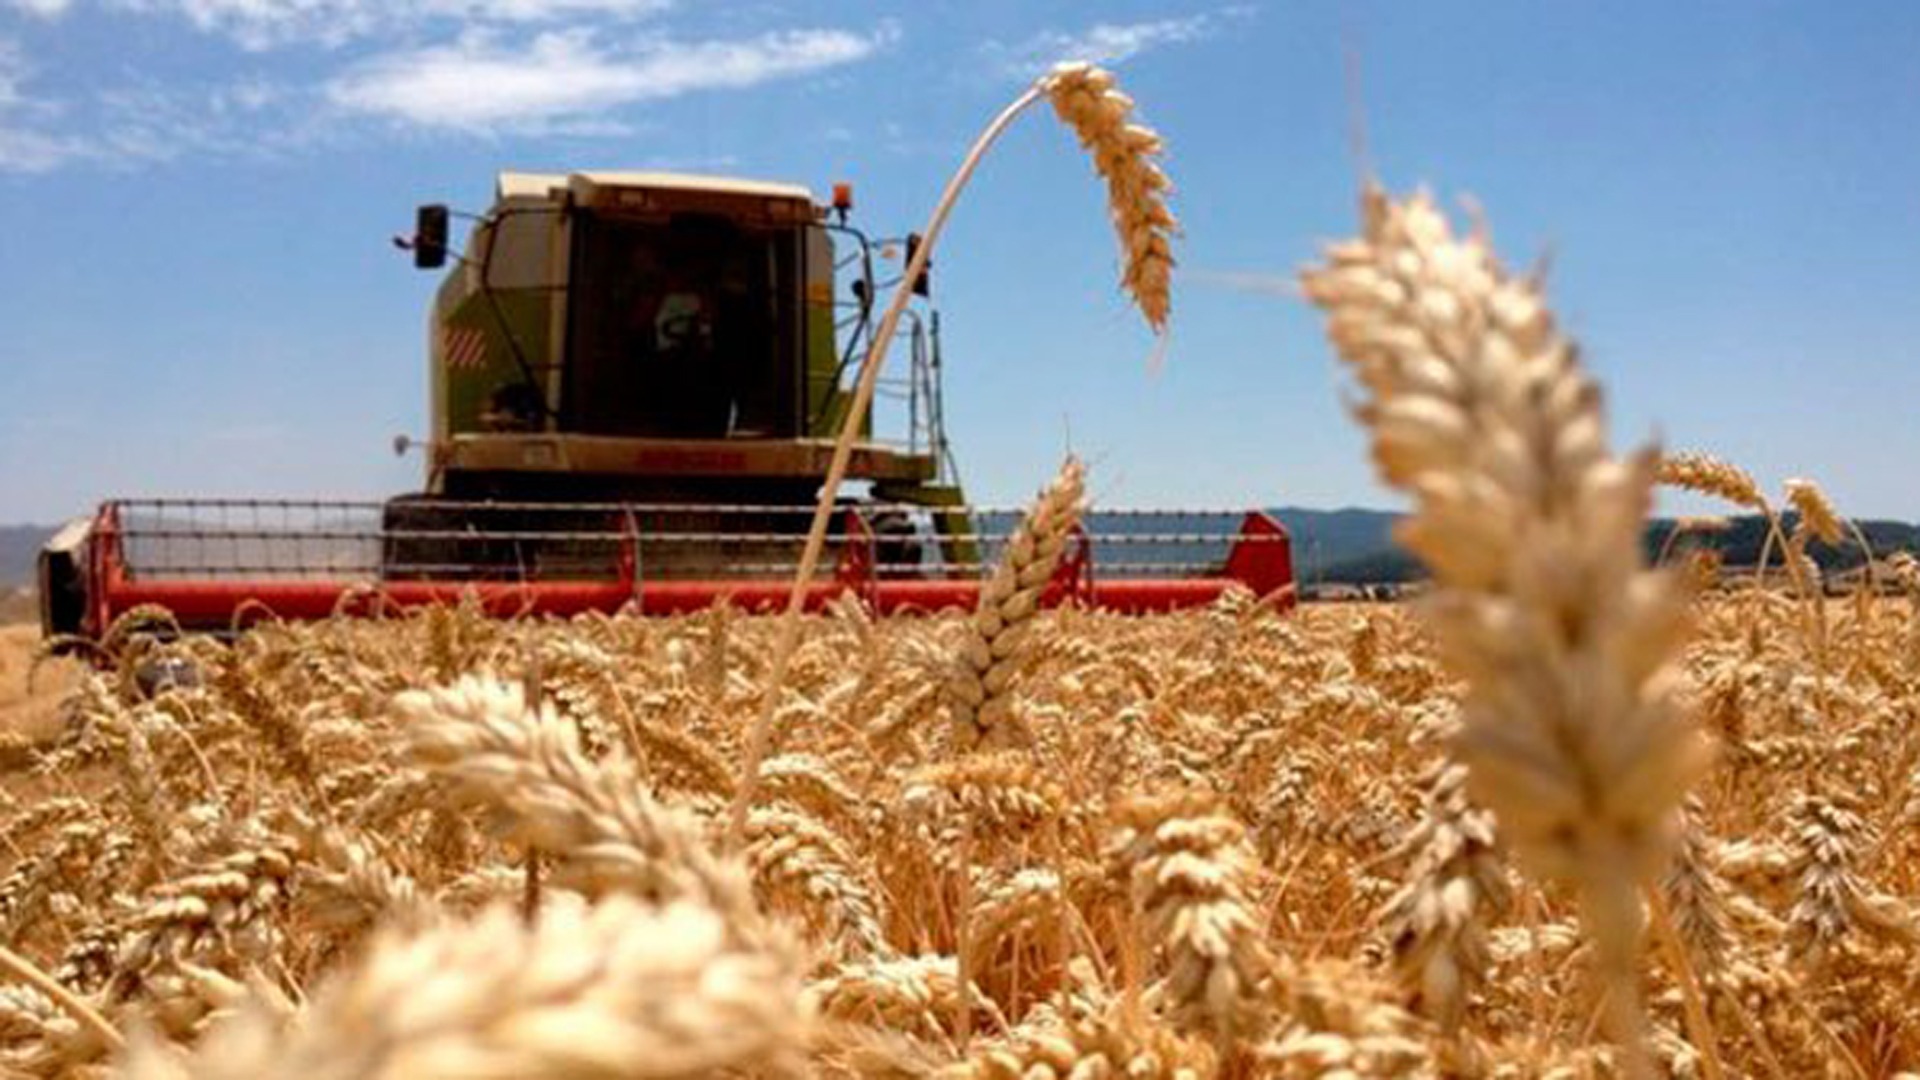 El Estado se lleva el 84% de la renta en el trigo como consecuencia de la suba de costos y la fuerte baja de precios internacionales.